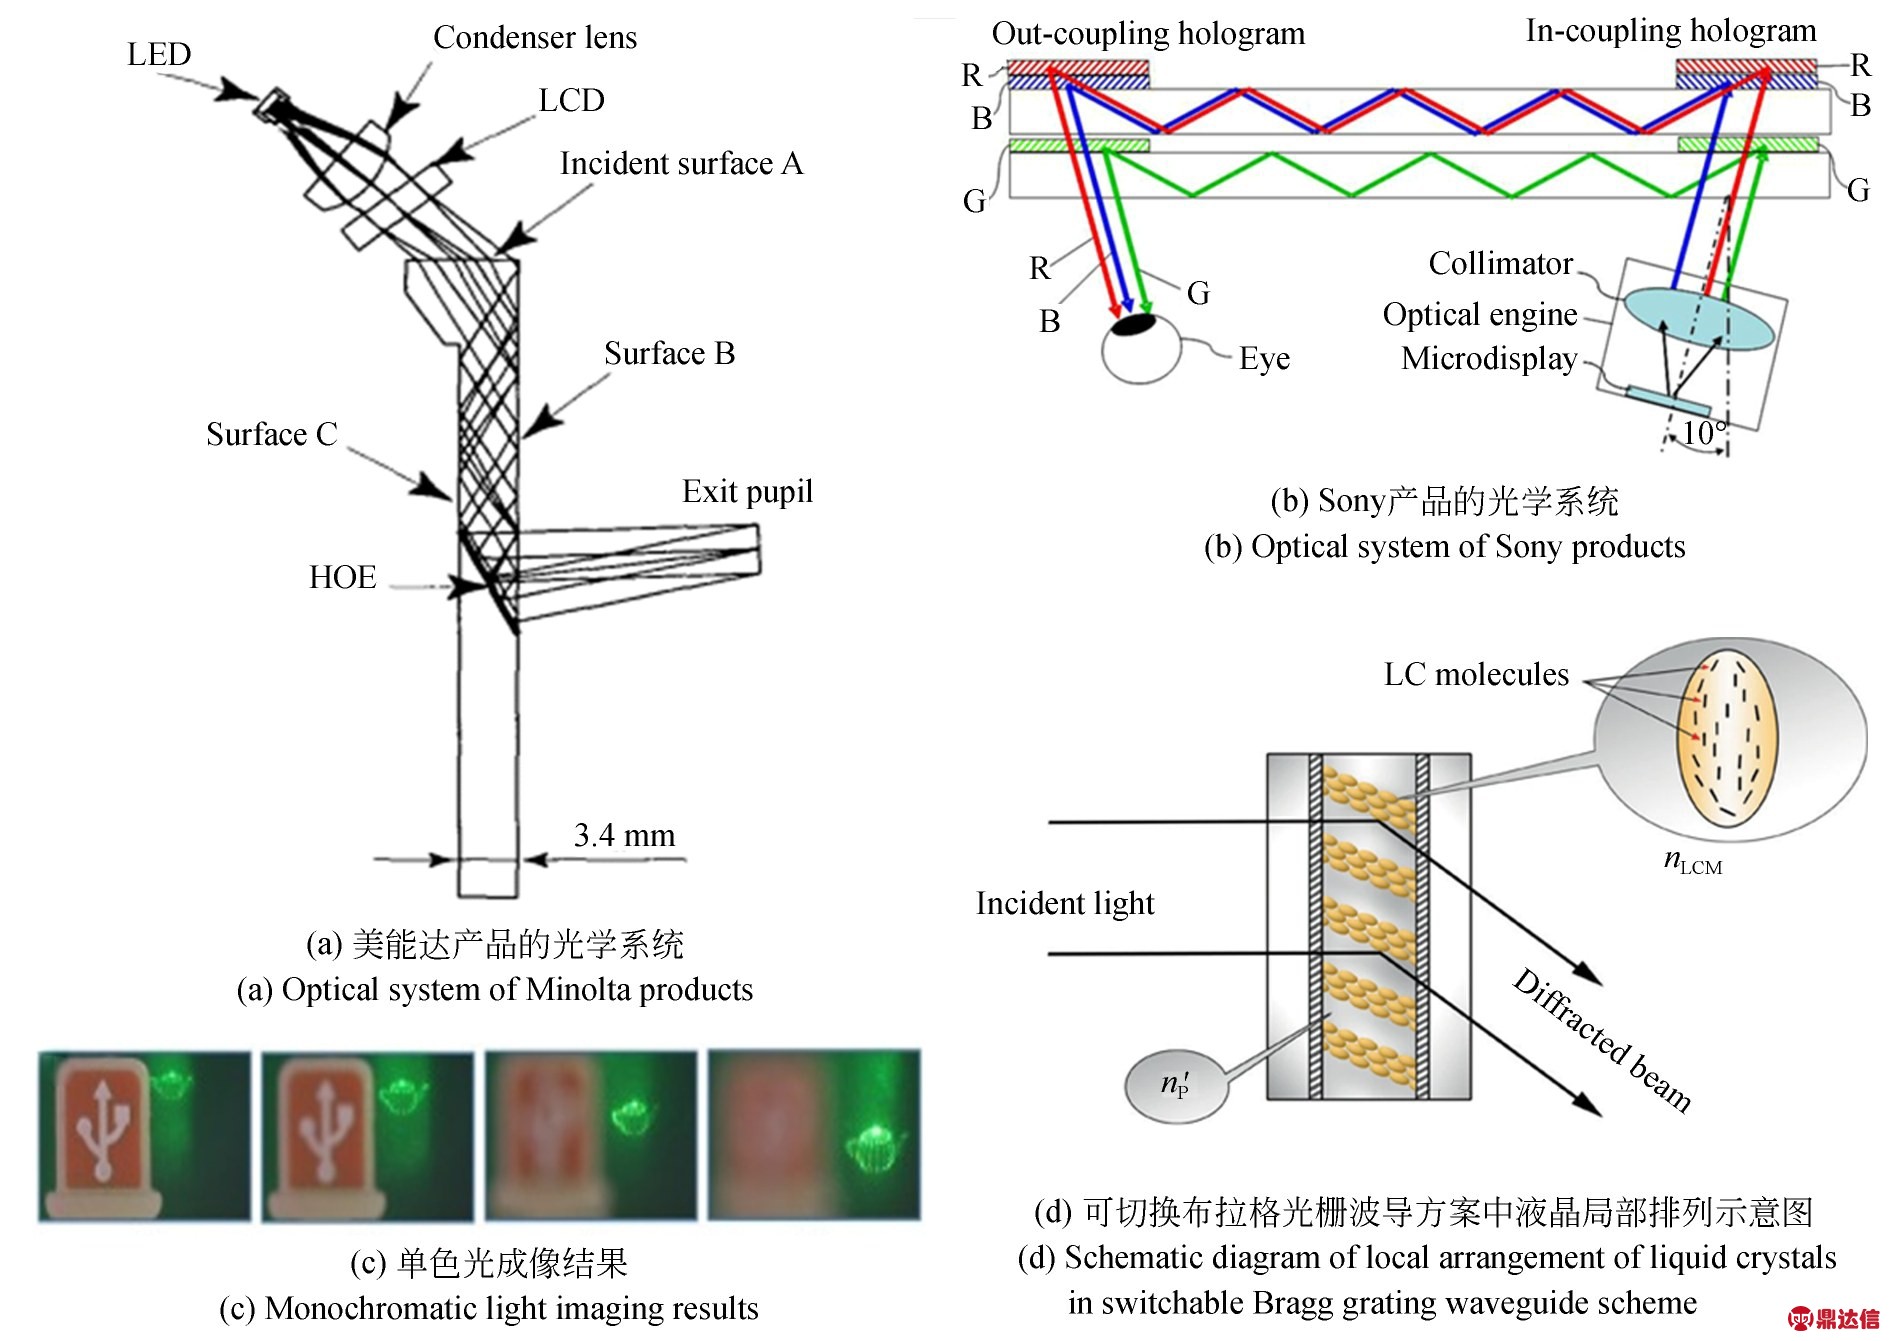 增强现实近眼显示设备中光波导元件的研究进展